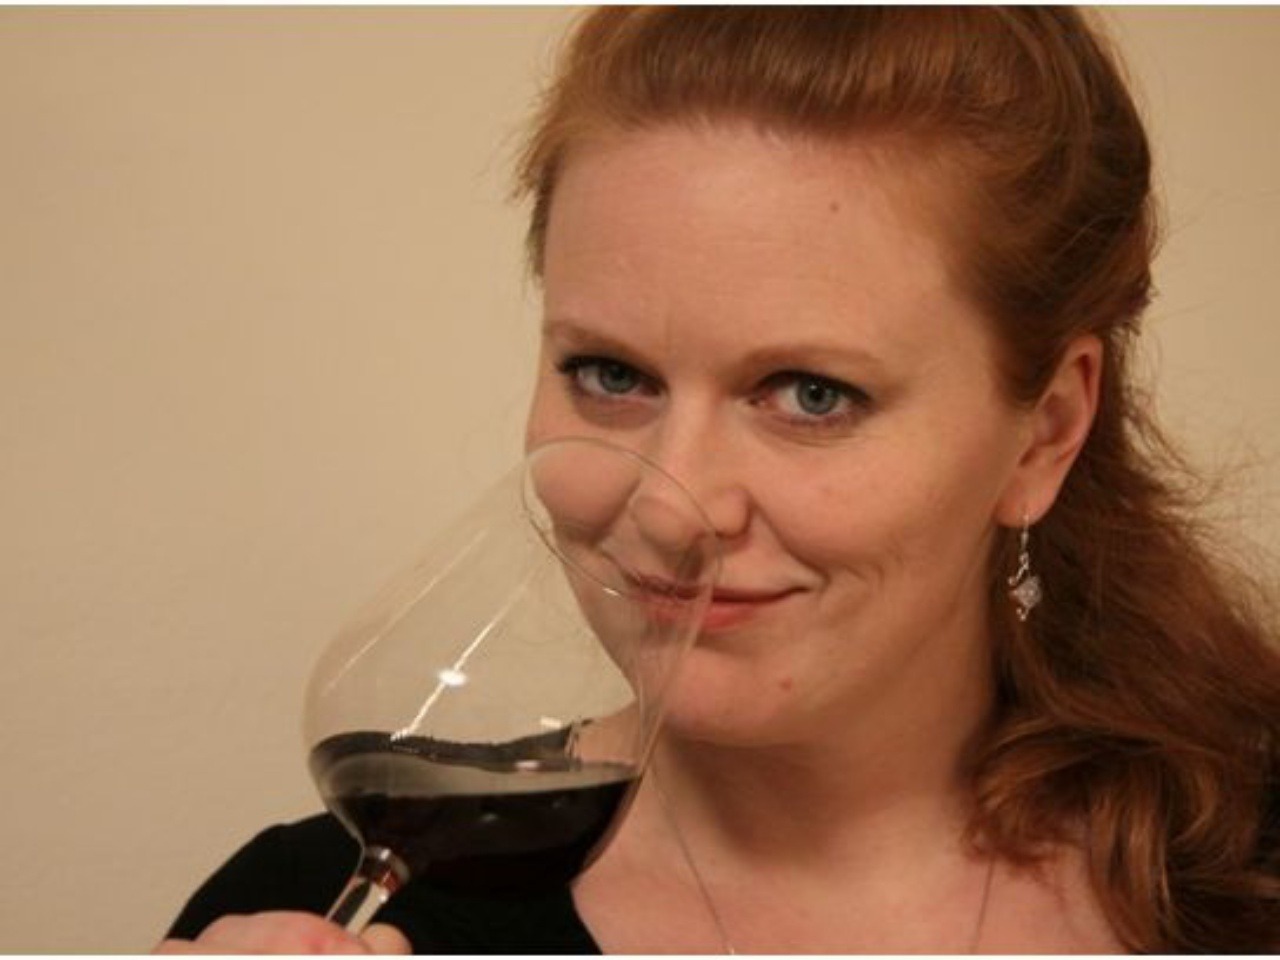 Pre Katarínu Furdíkovú víno nie je len prácou, ale aj vášňou.